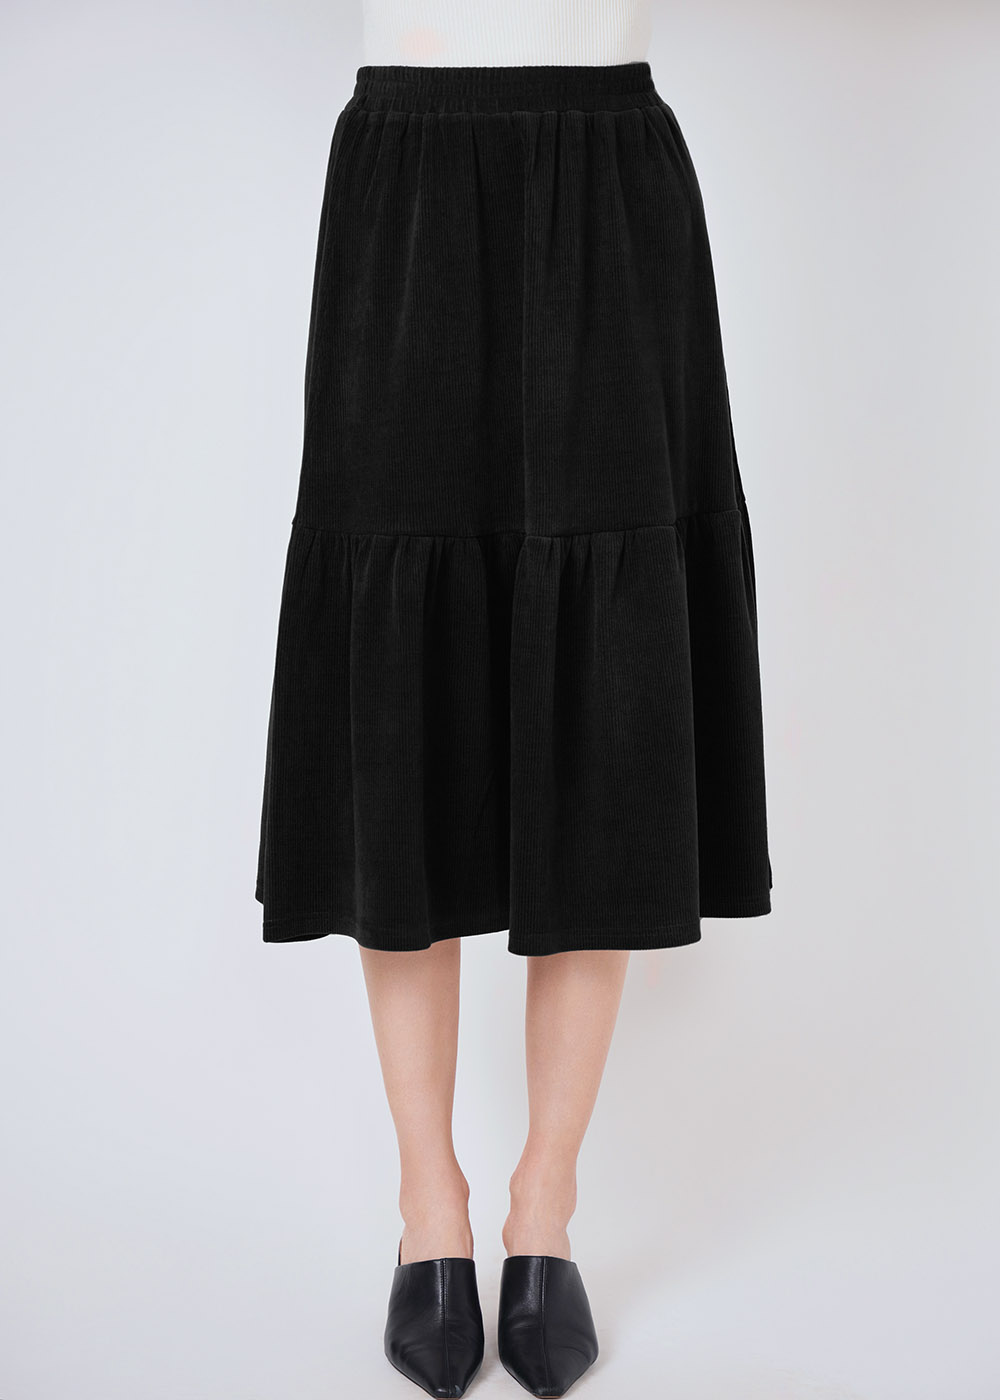 Soft Flare: Black Midi Skirt